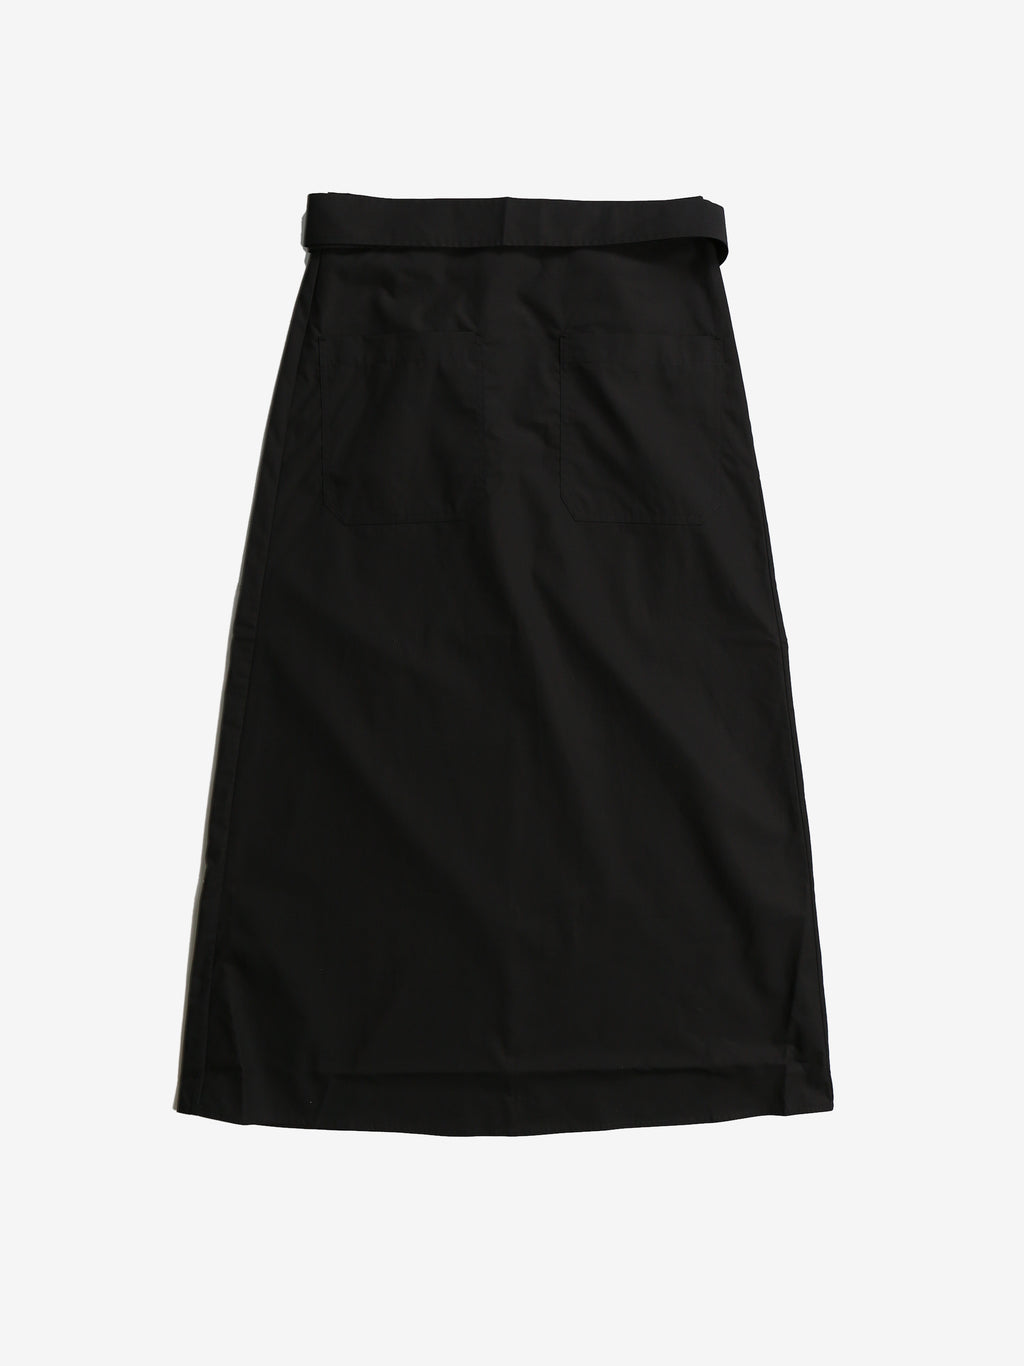 TOTEME Women Tie-Waist Cotton Skirt